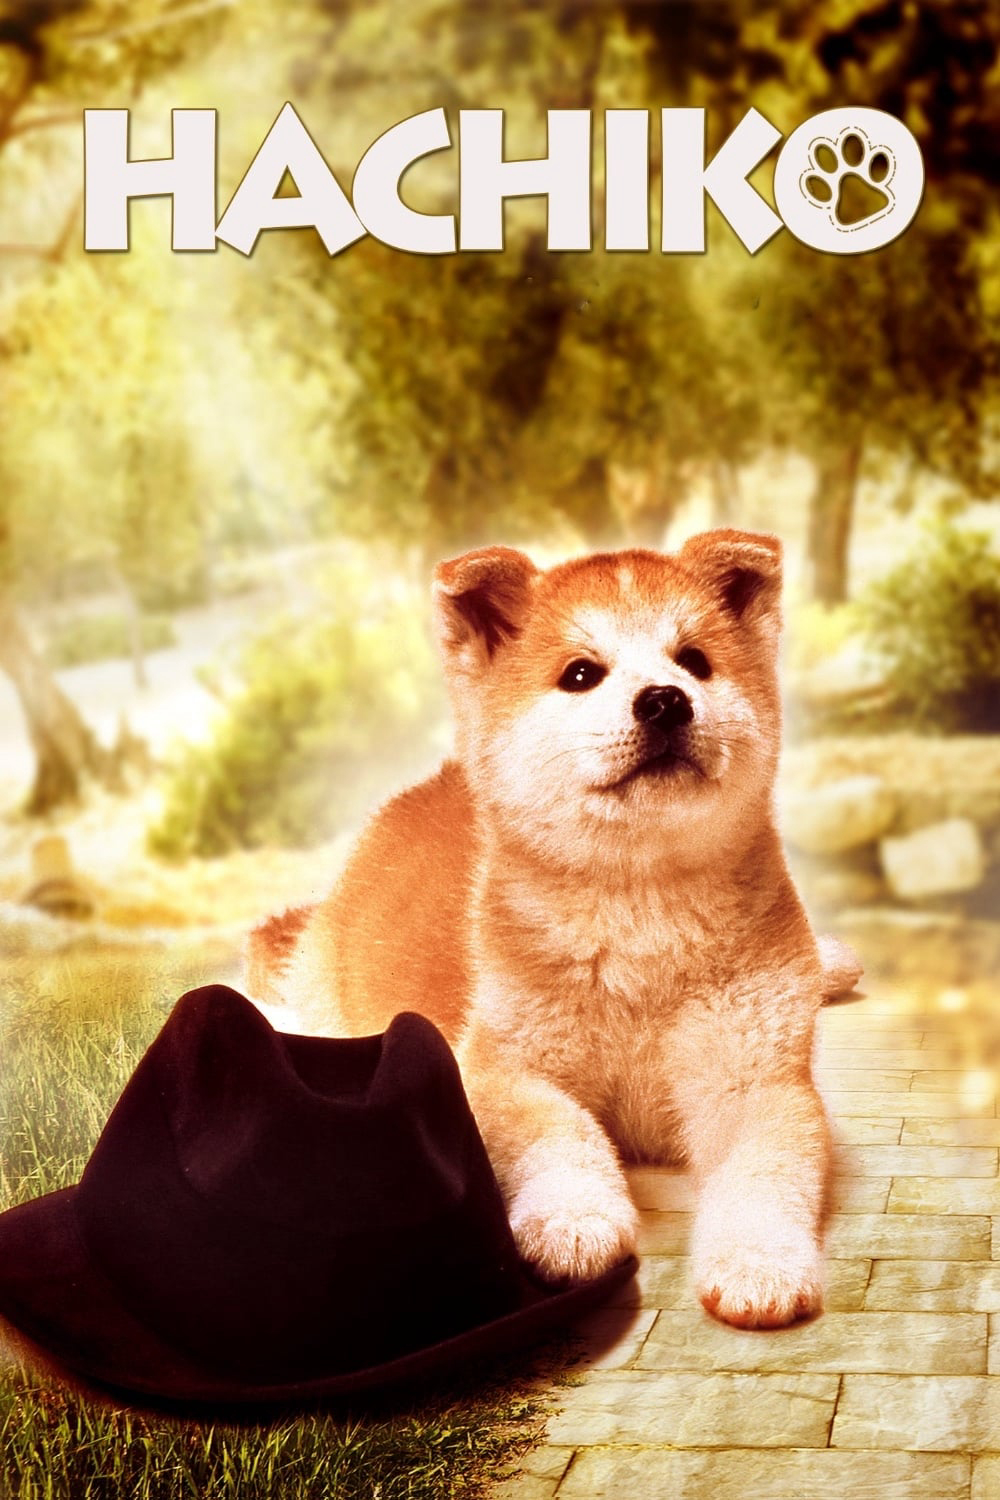 Poster Phim Câu Chuyện Về Chú Chó Hachiko (Hachi-ko)